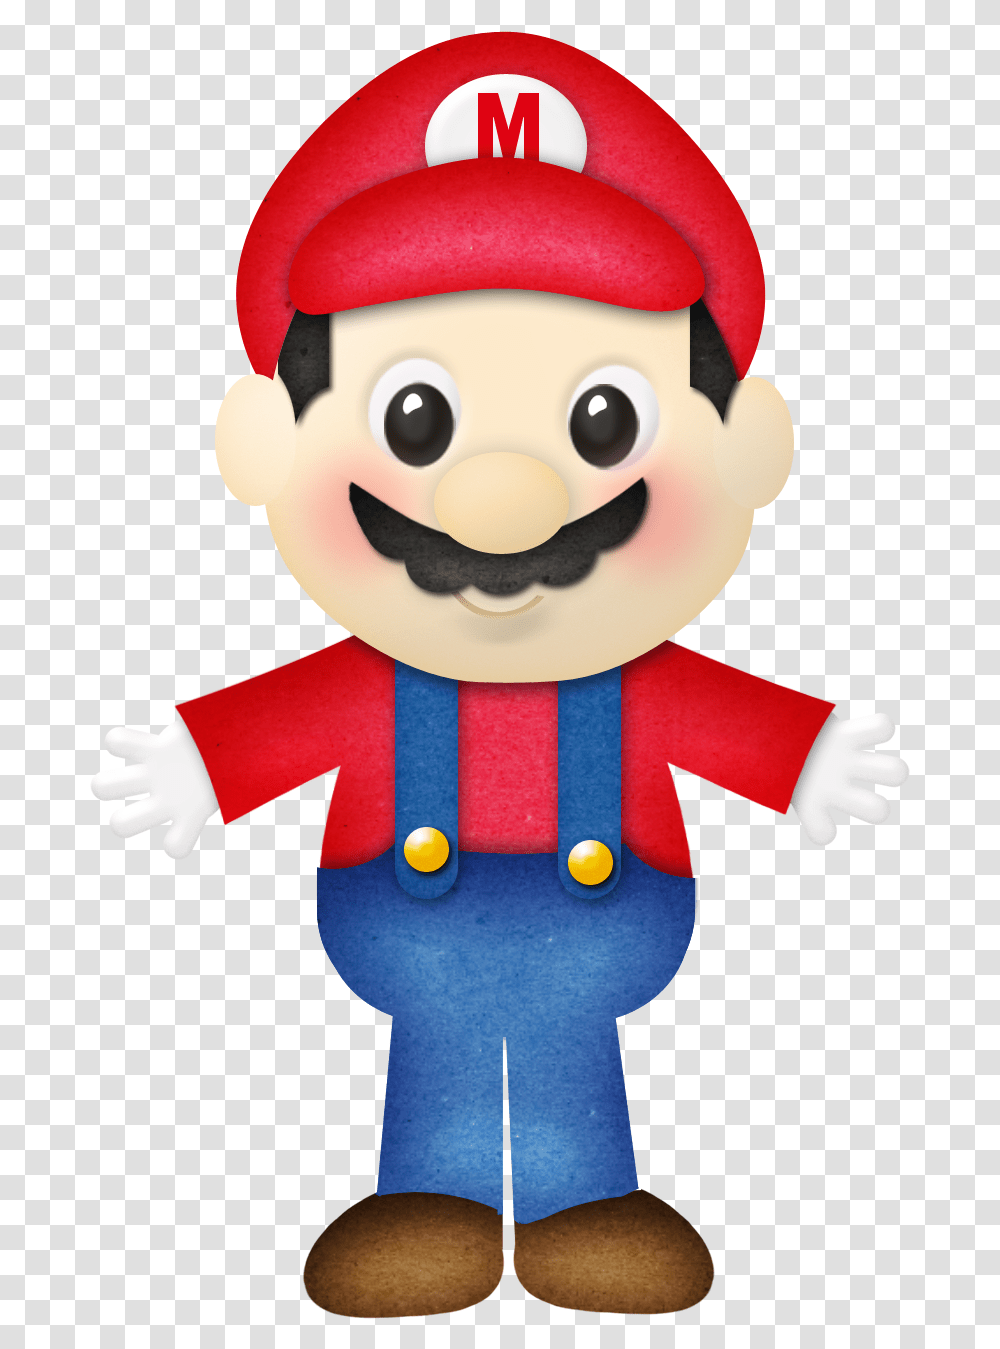 Mario Series, Toy, Super Mario, Plush Transparent Png